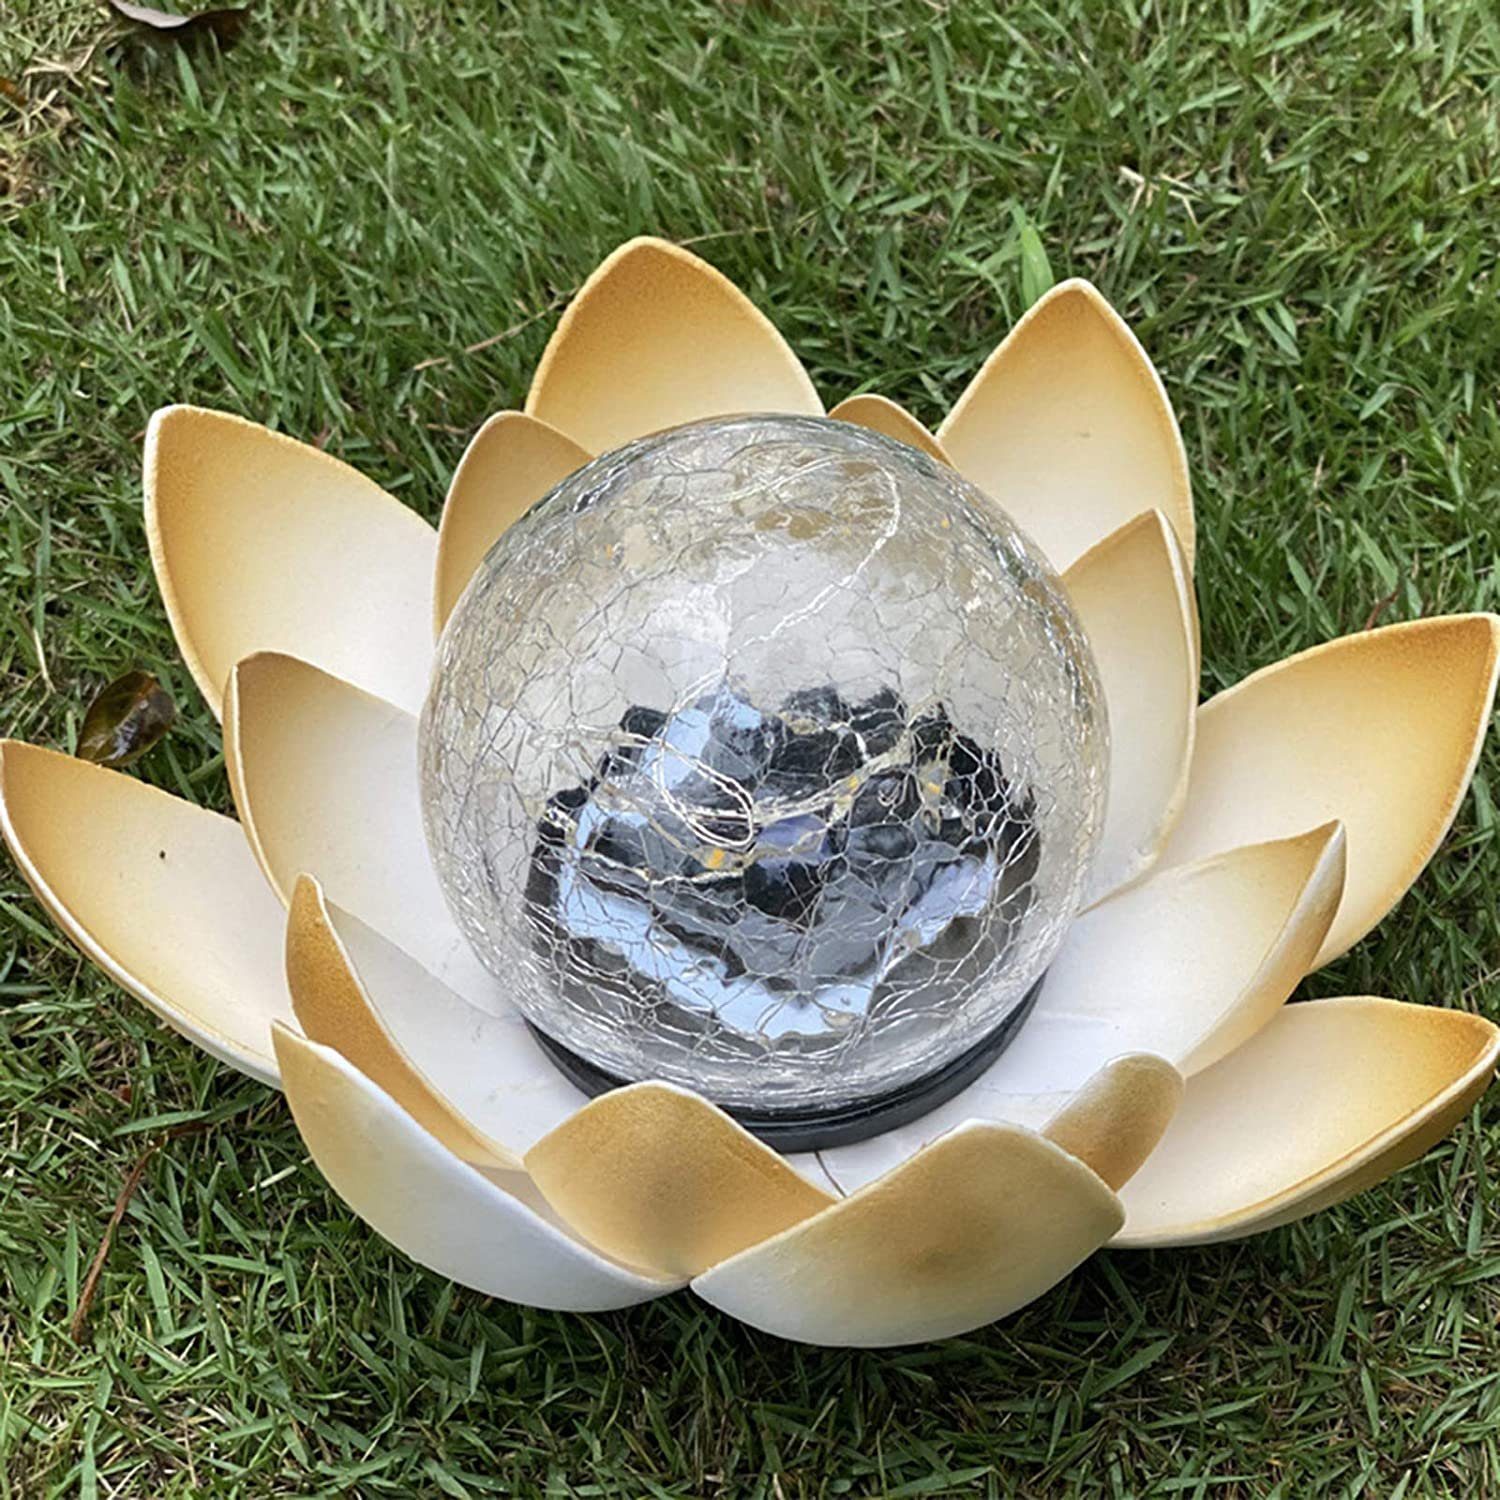 Leway Pool-Lampe Lotus LED Solarleuchte, schwimmende Blume Nachtlampe  Gartenleuchte Solar, Deko Lampe für Schwimmbad Garten Aquarium Hochzeit  Hof, Teich Beleuchtung